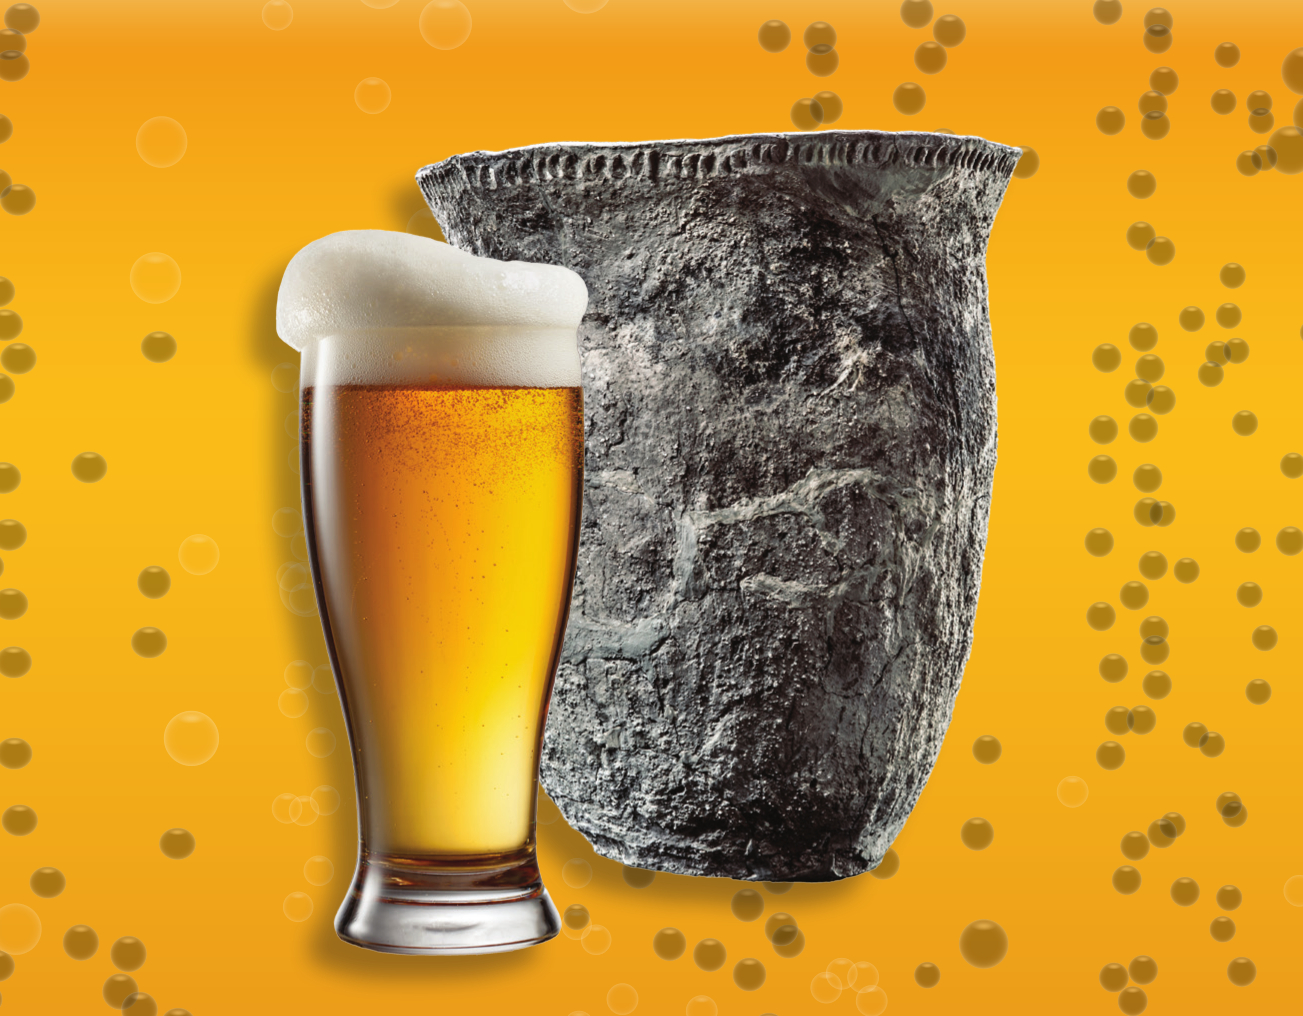  Steinzeitgefäß und Bierglas 